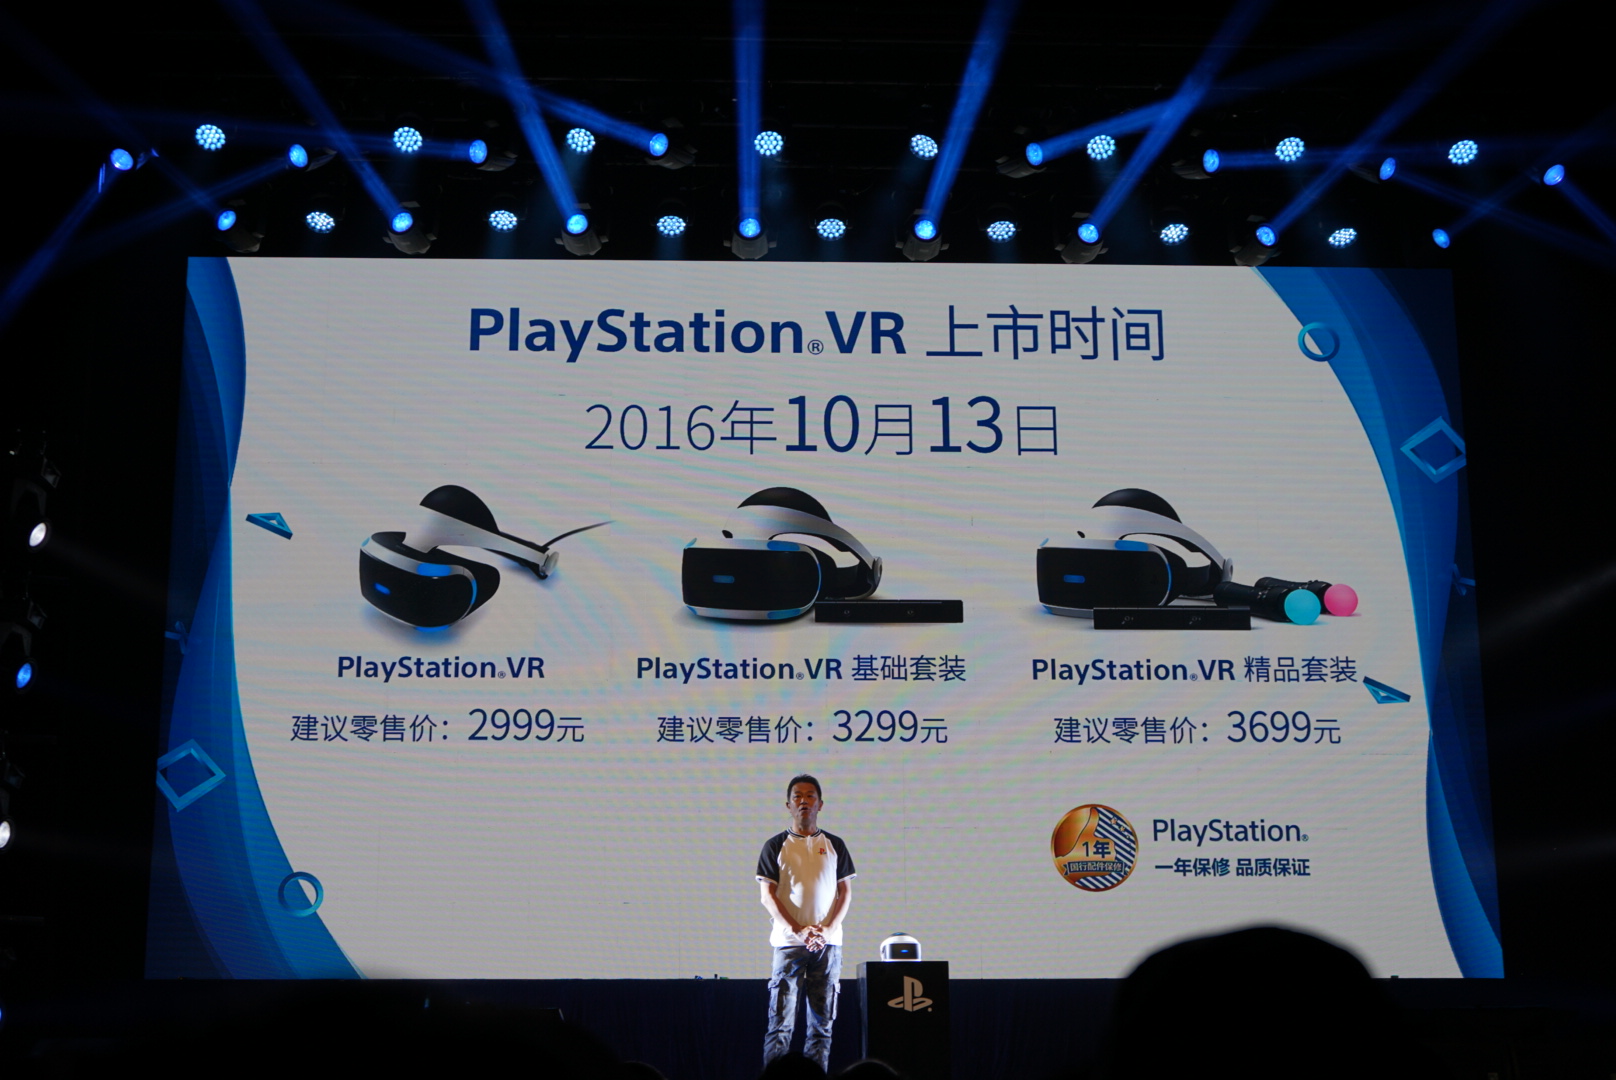 不用充值信仰 索尼PS VR与竞品完全不是一个套路